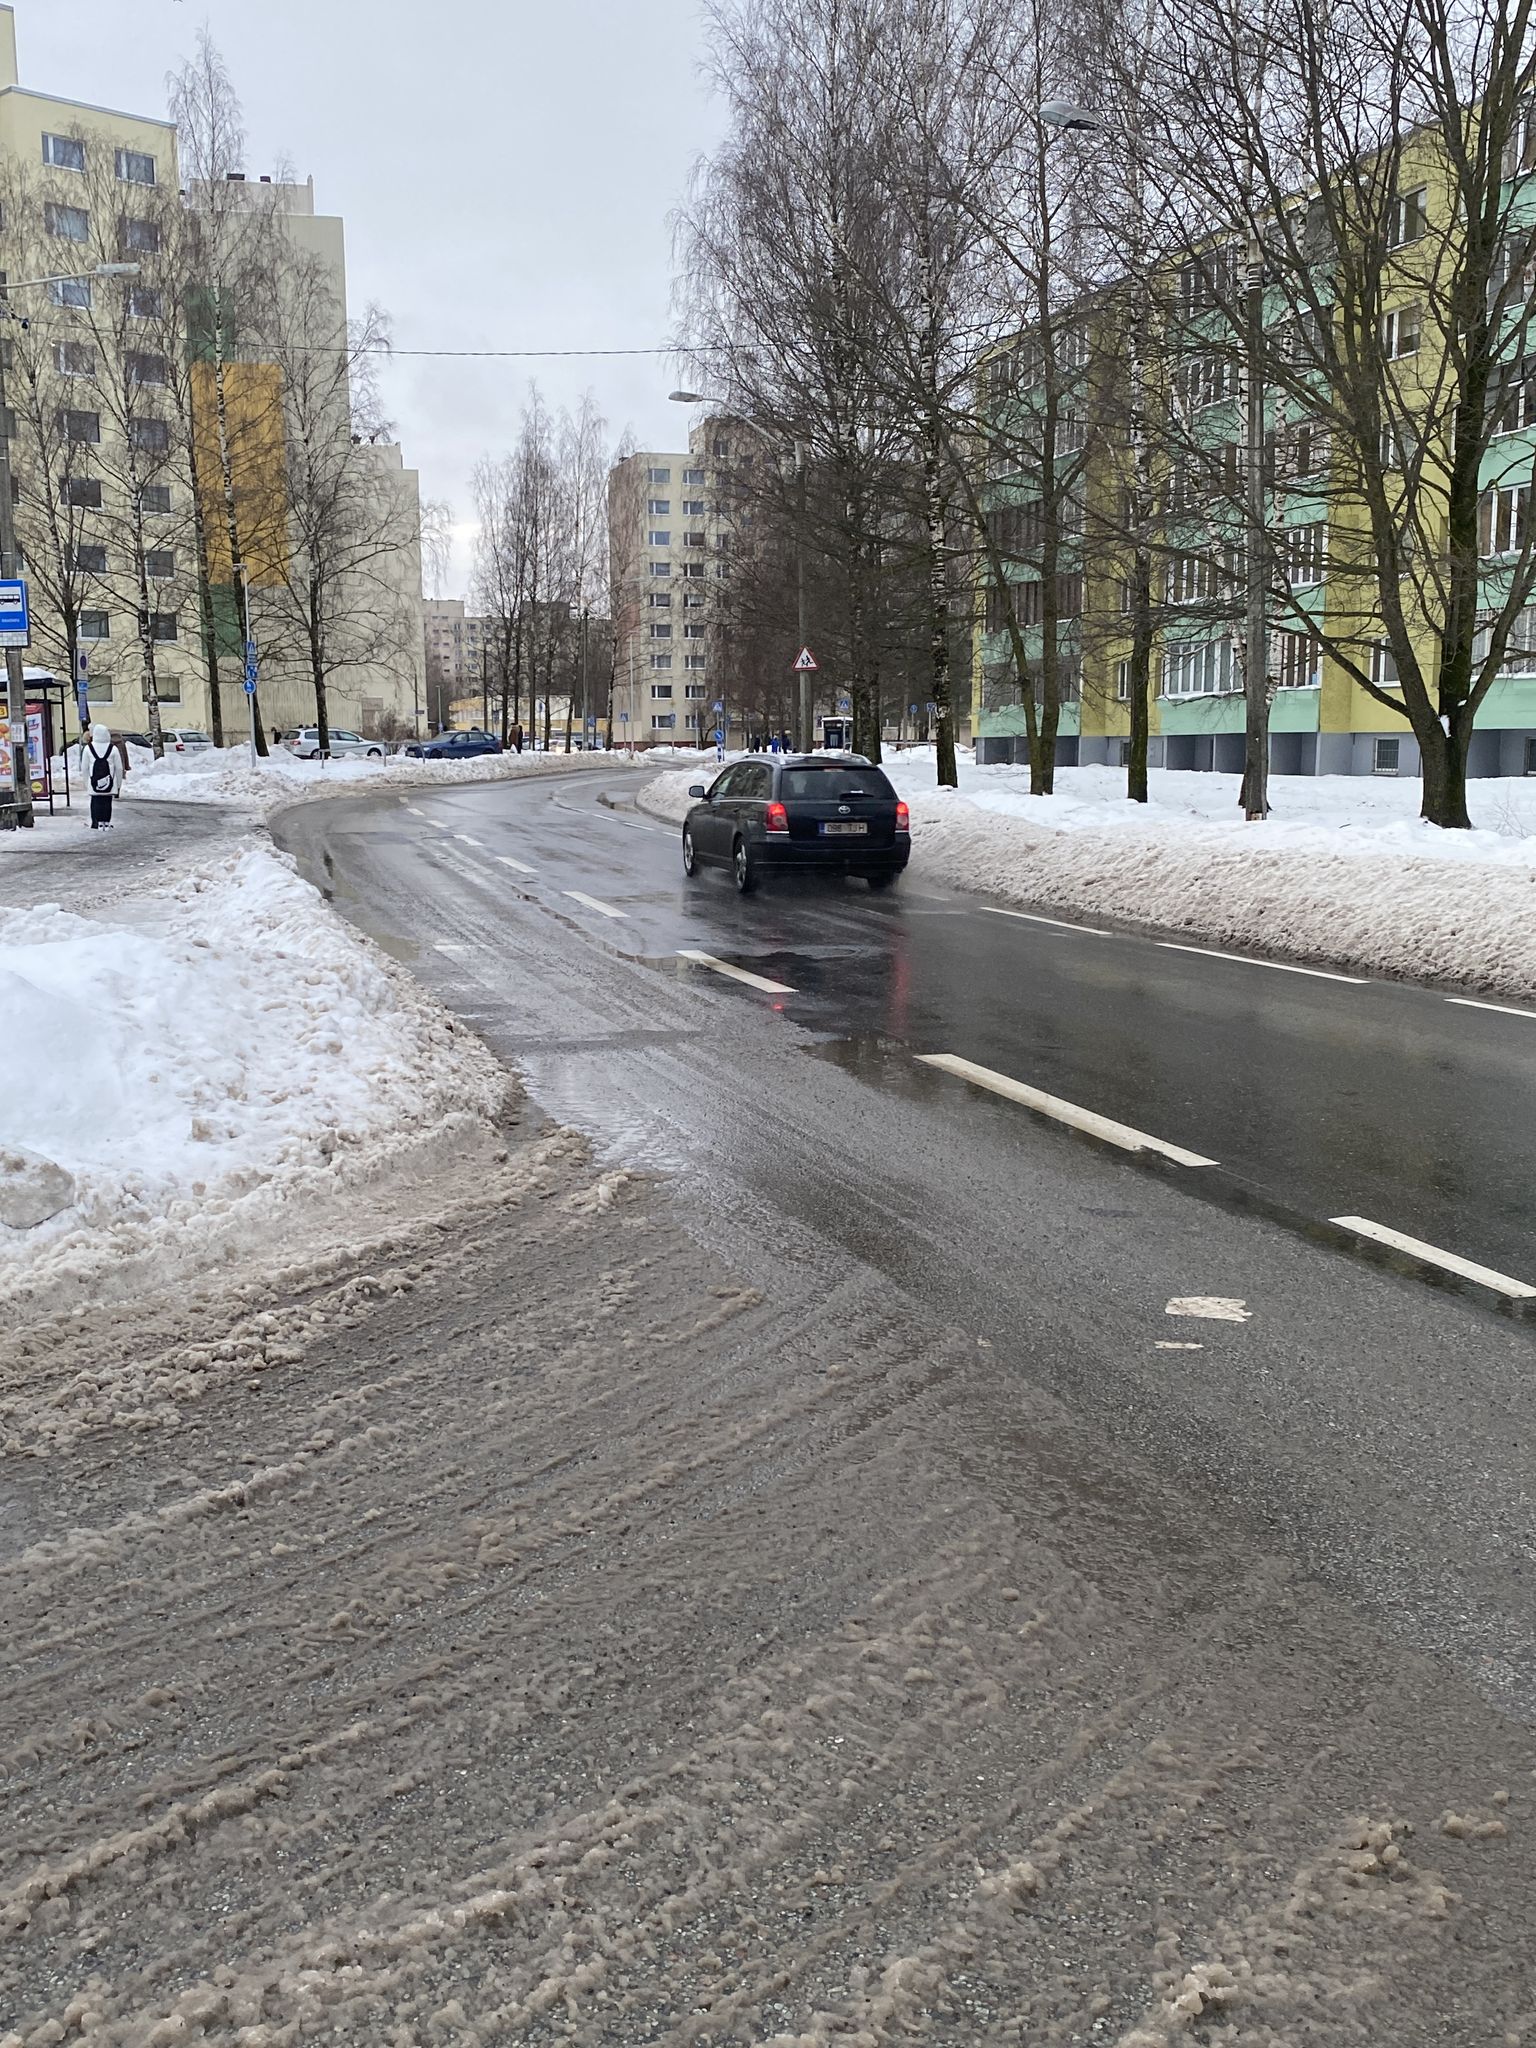 Перед остановкой Раадику, что возле школы Махтра в Таллинне, снег закрыл половину полосы движения, вынуждая автобусы и другой транспорт выезжать на встречную полосу.